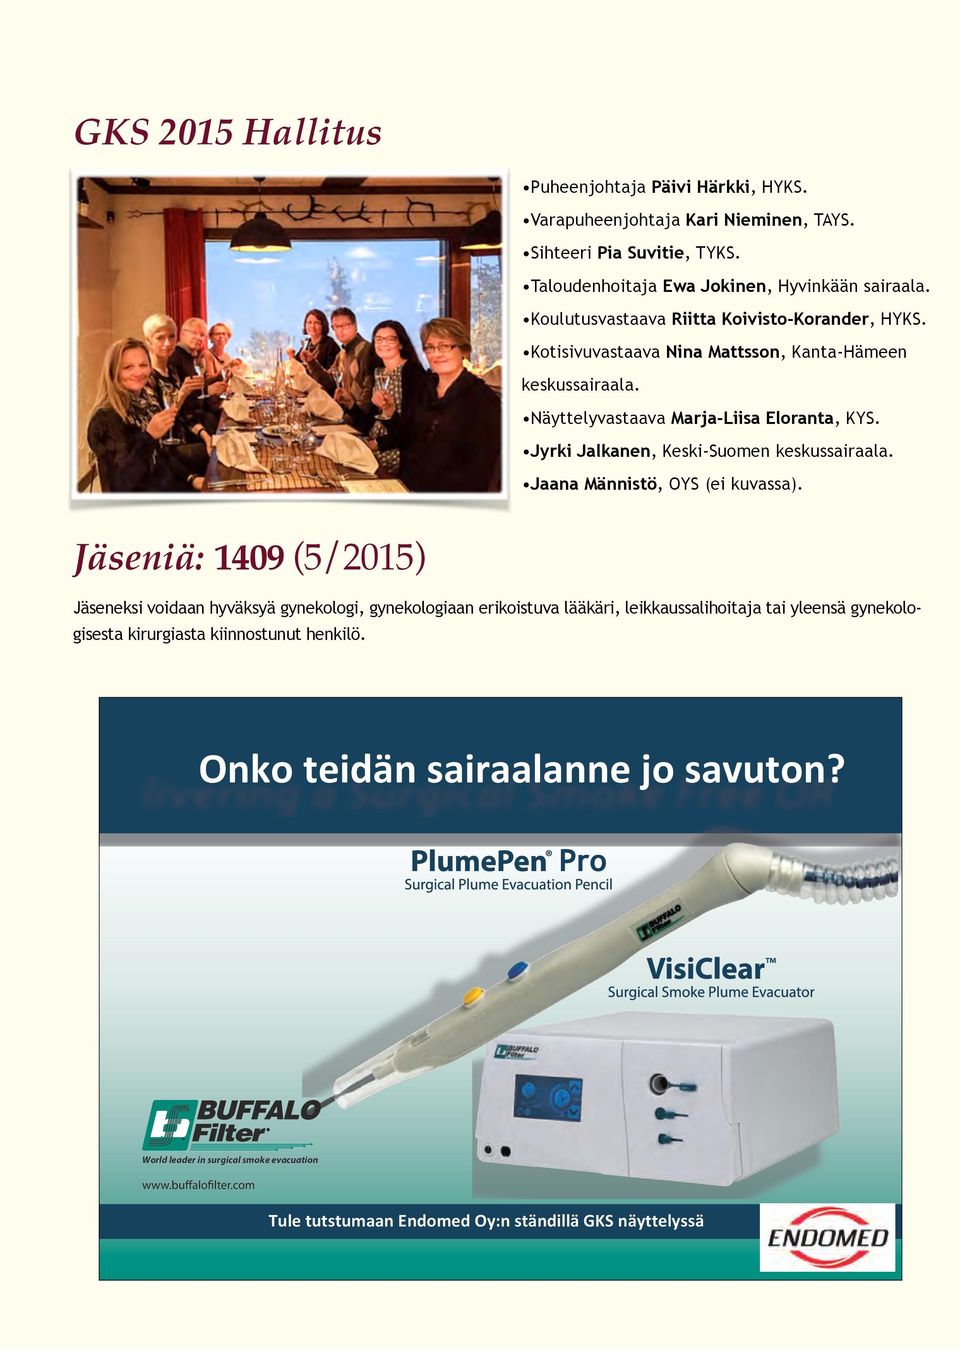 Jyrki Jalkanen, Keski-Suomen keskussairaala. Jaana Männistö, OYS (ei kuvassa).